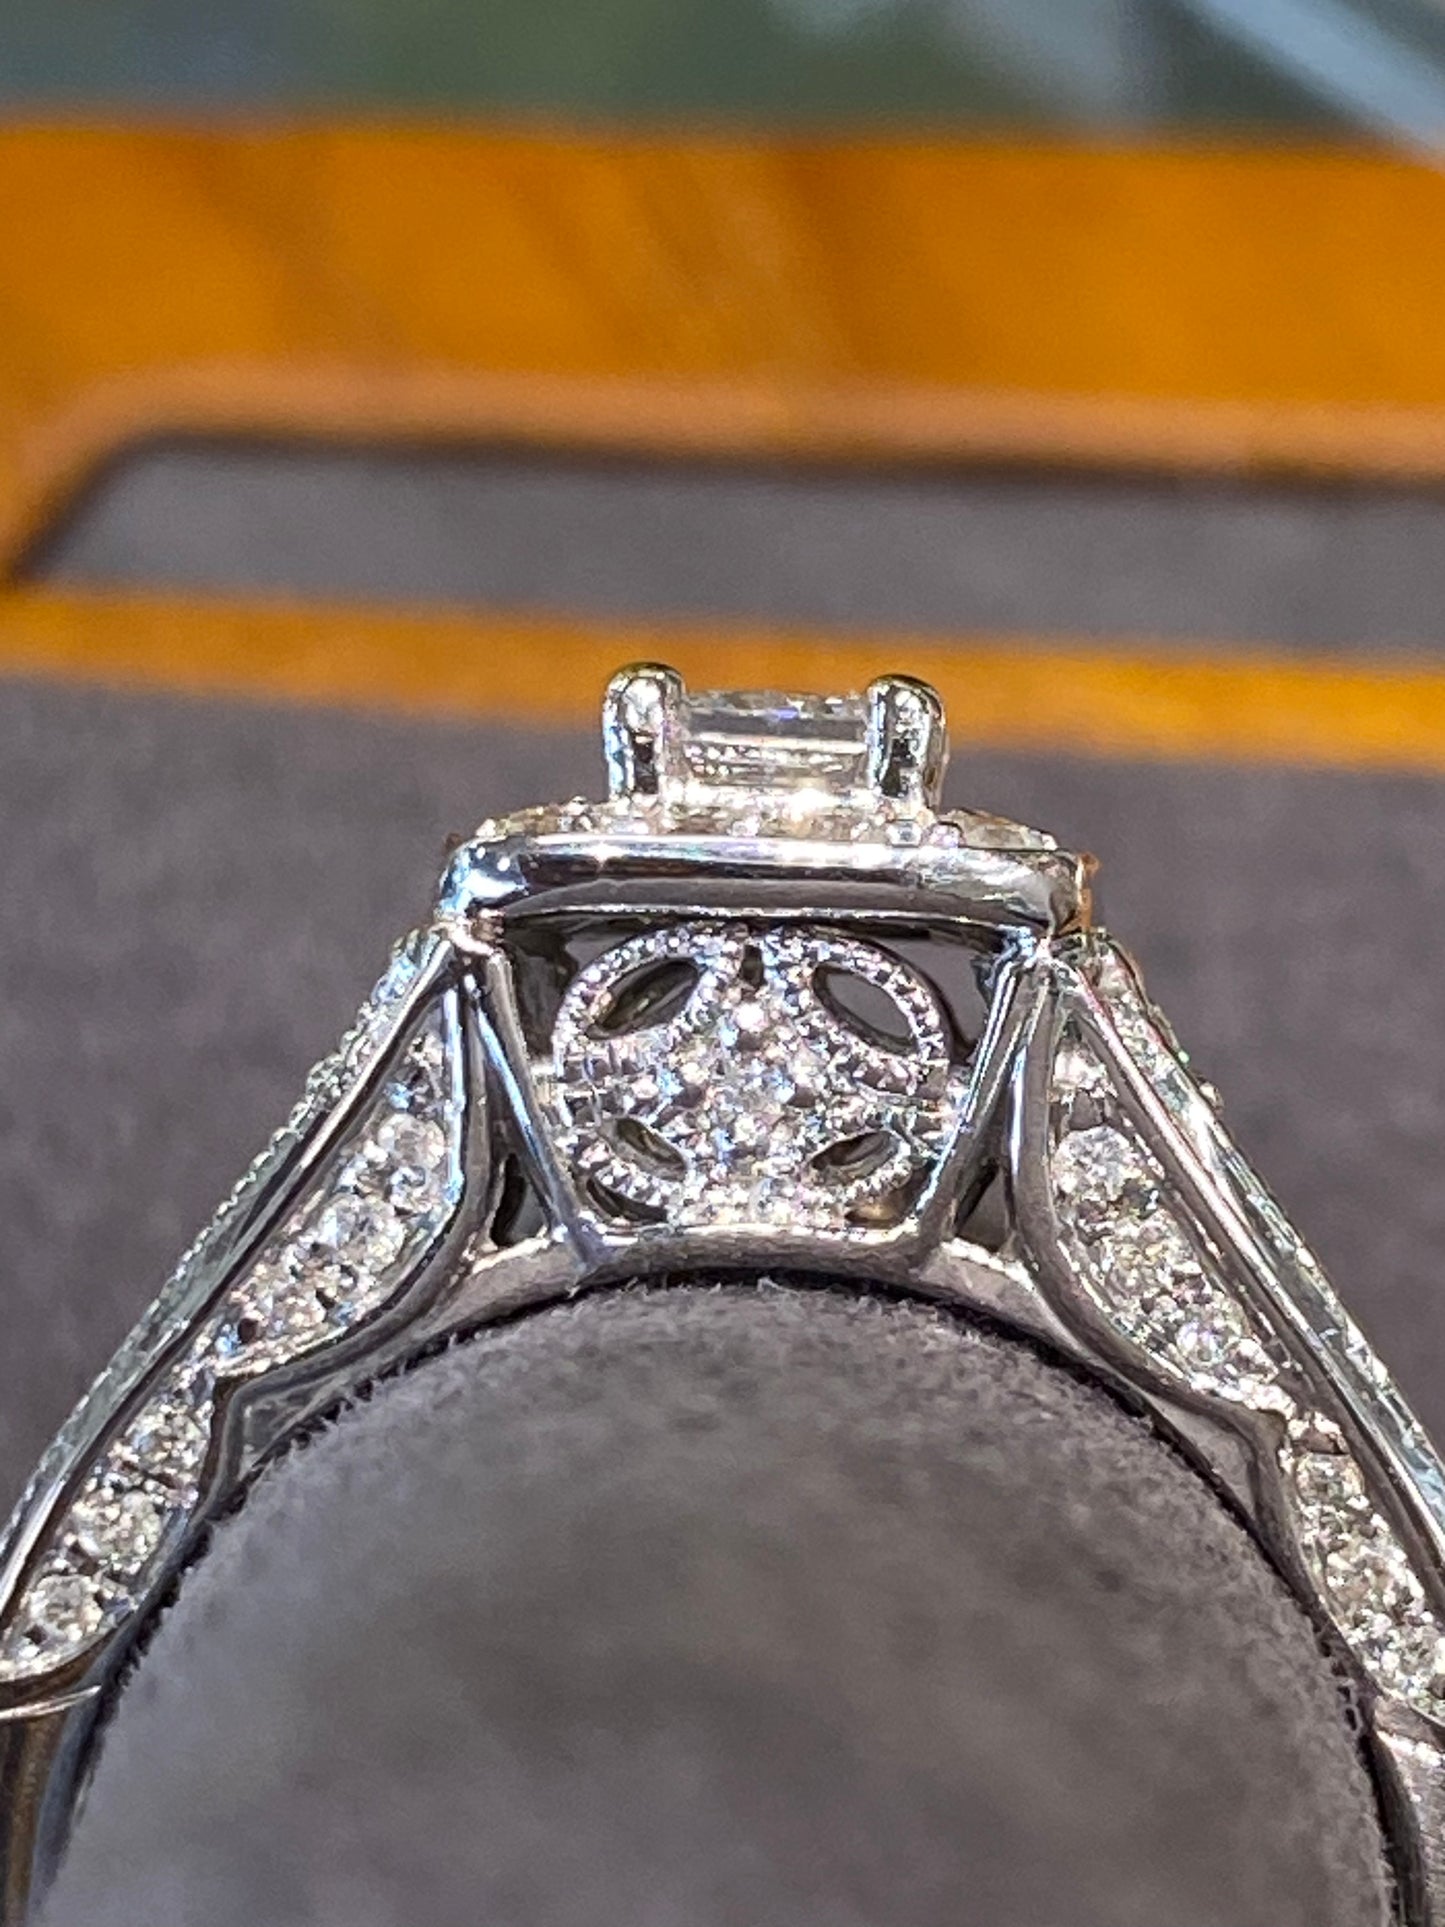 14k White Gold Engagement Ring